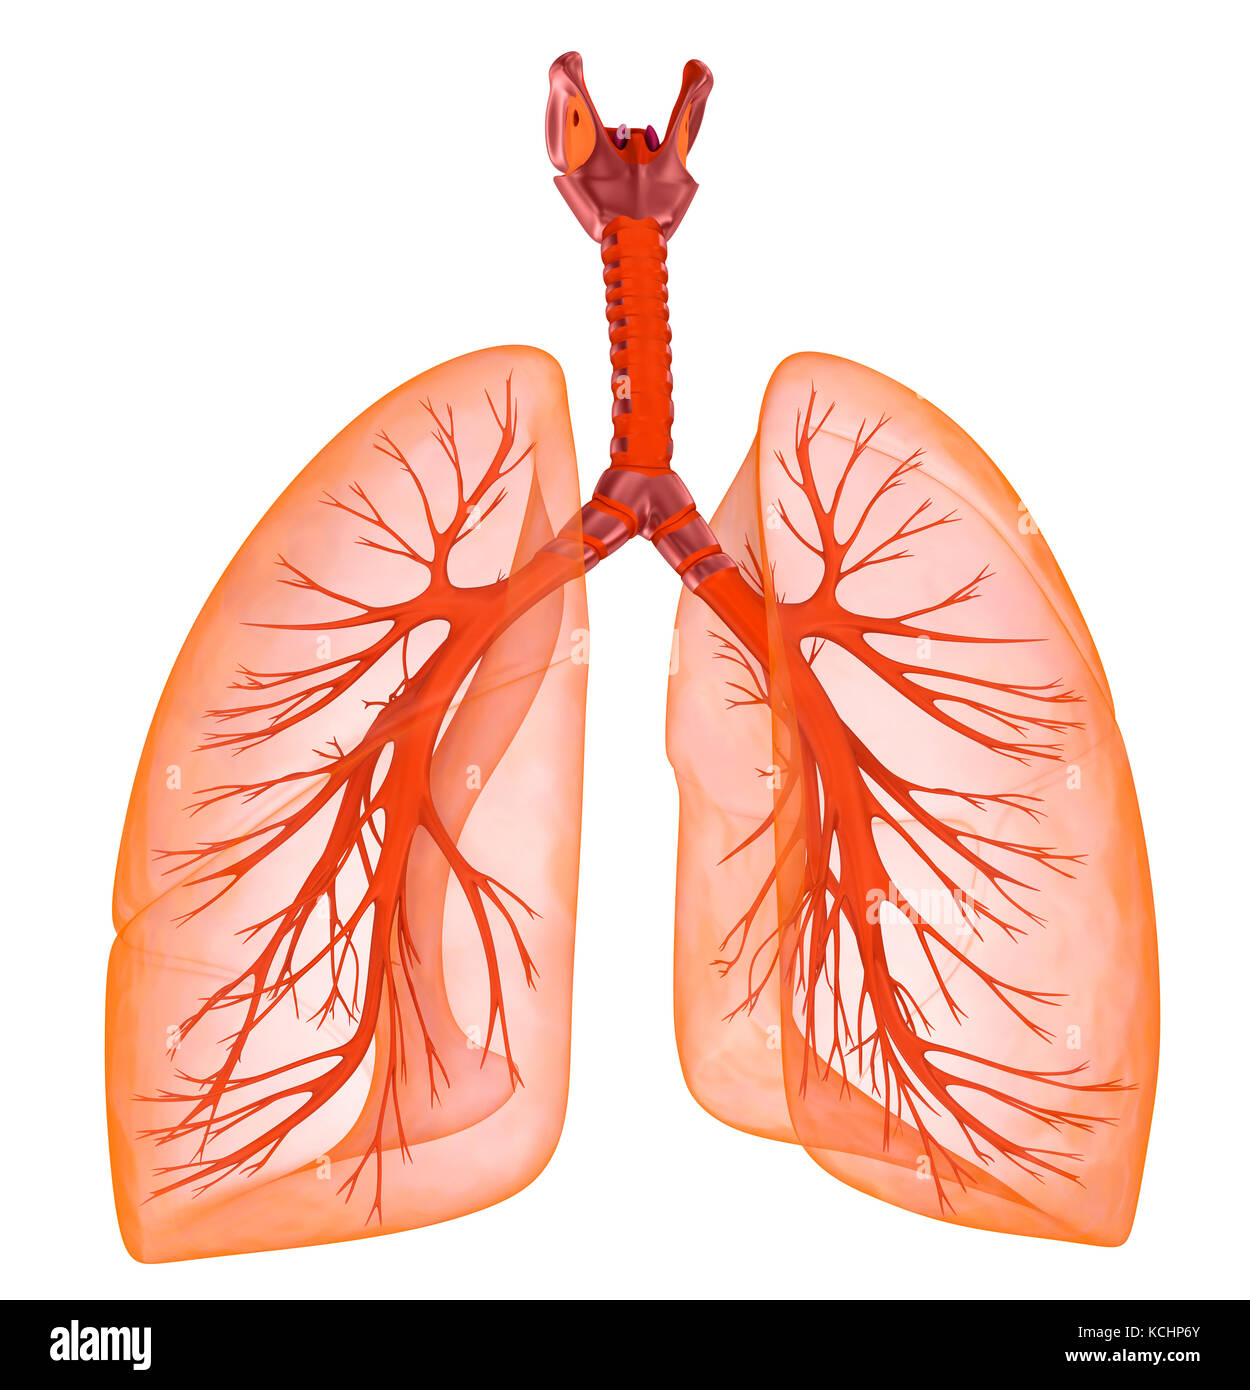 Die menschliche Lunge und Luftröhre. medizinisch genaue 3D-Darstellung ...